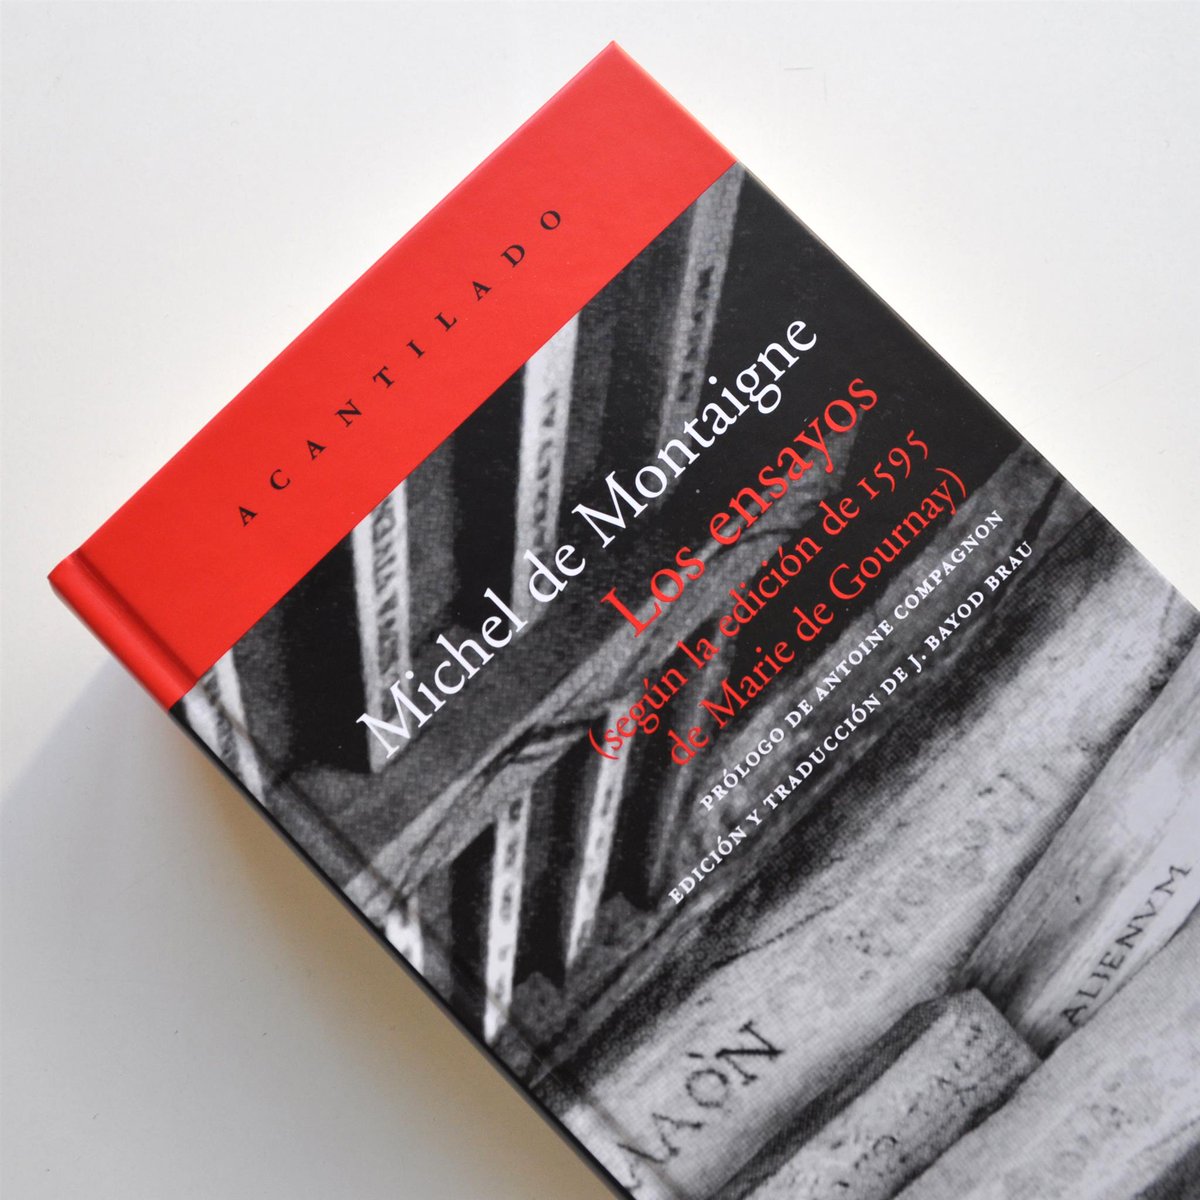 posponer Sudor Citar Acantilado on Twitter: "'Los ensayos', de Michel de Montaigne, es uno de  los libros que mayor prestigio e influencia han tenido en el pensamiento  occidental. Hoy alcanza su novena edición en Acantilado.